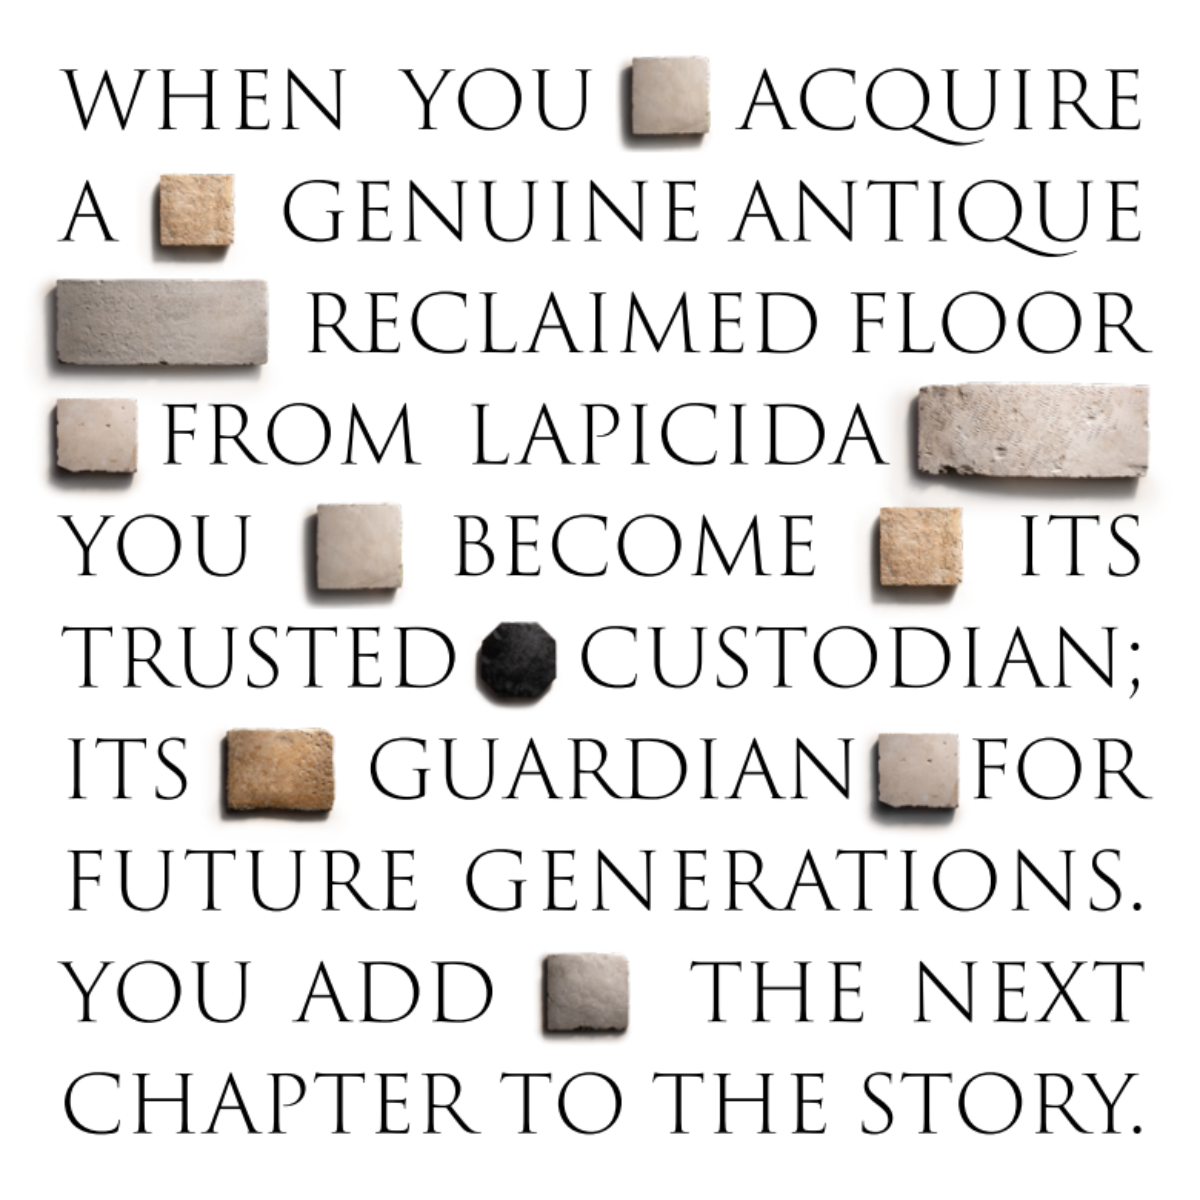 Lapicida genuine antique reclaimed stone advert